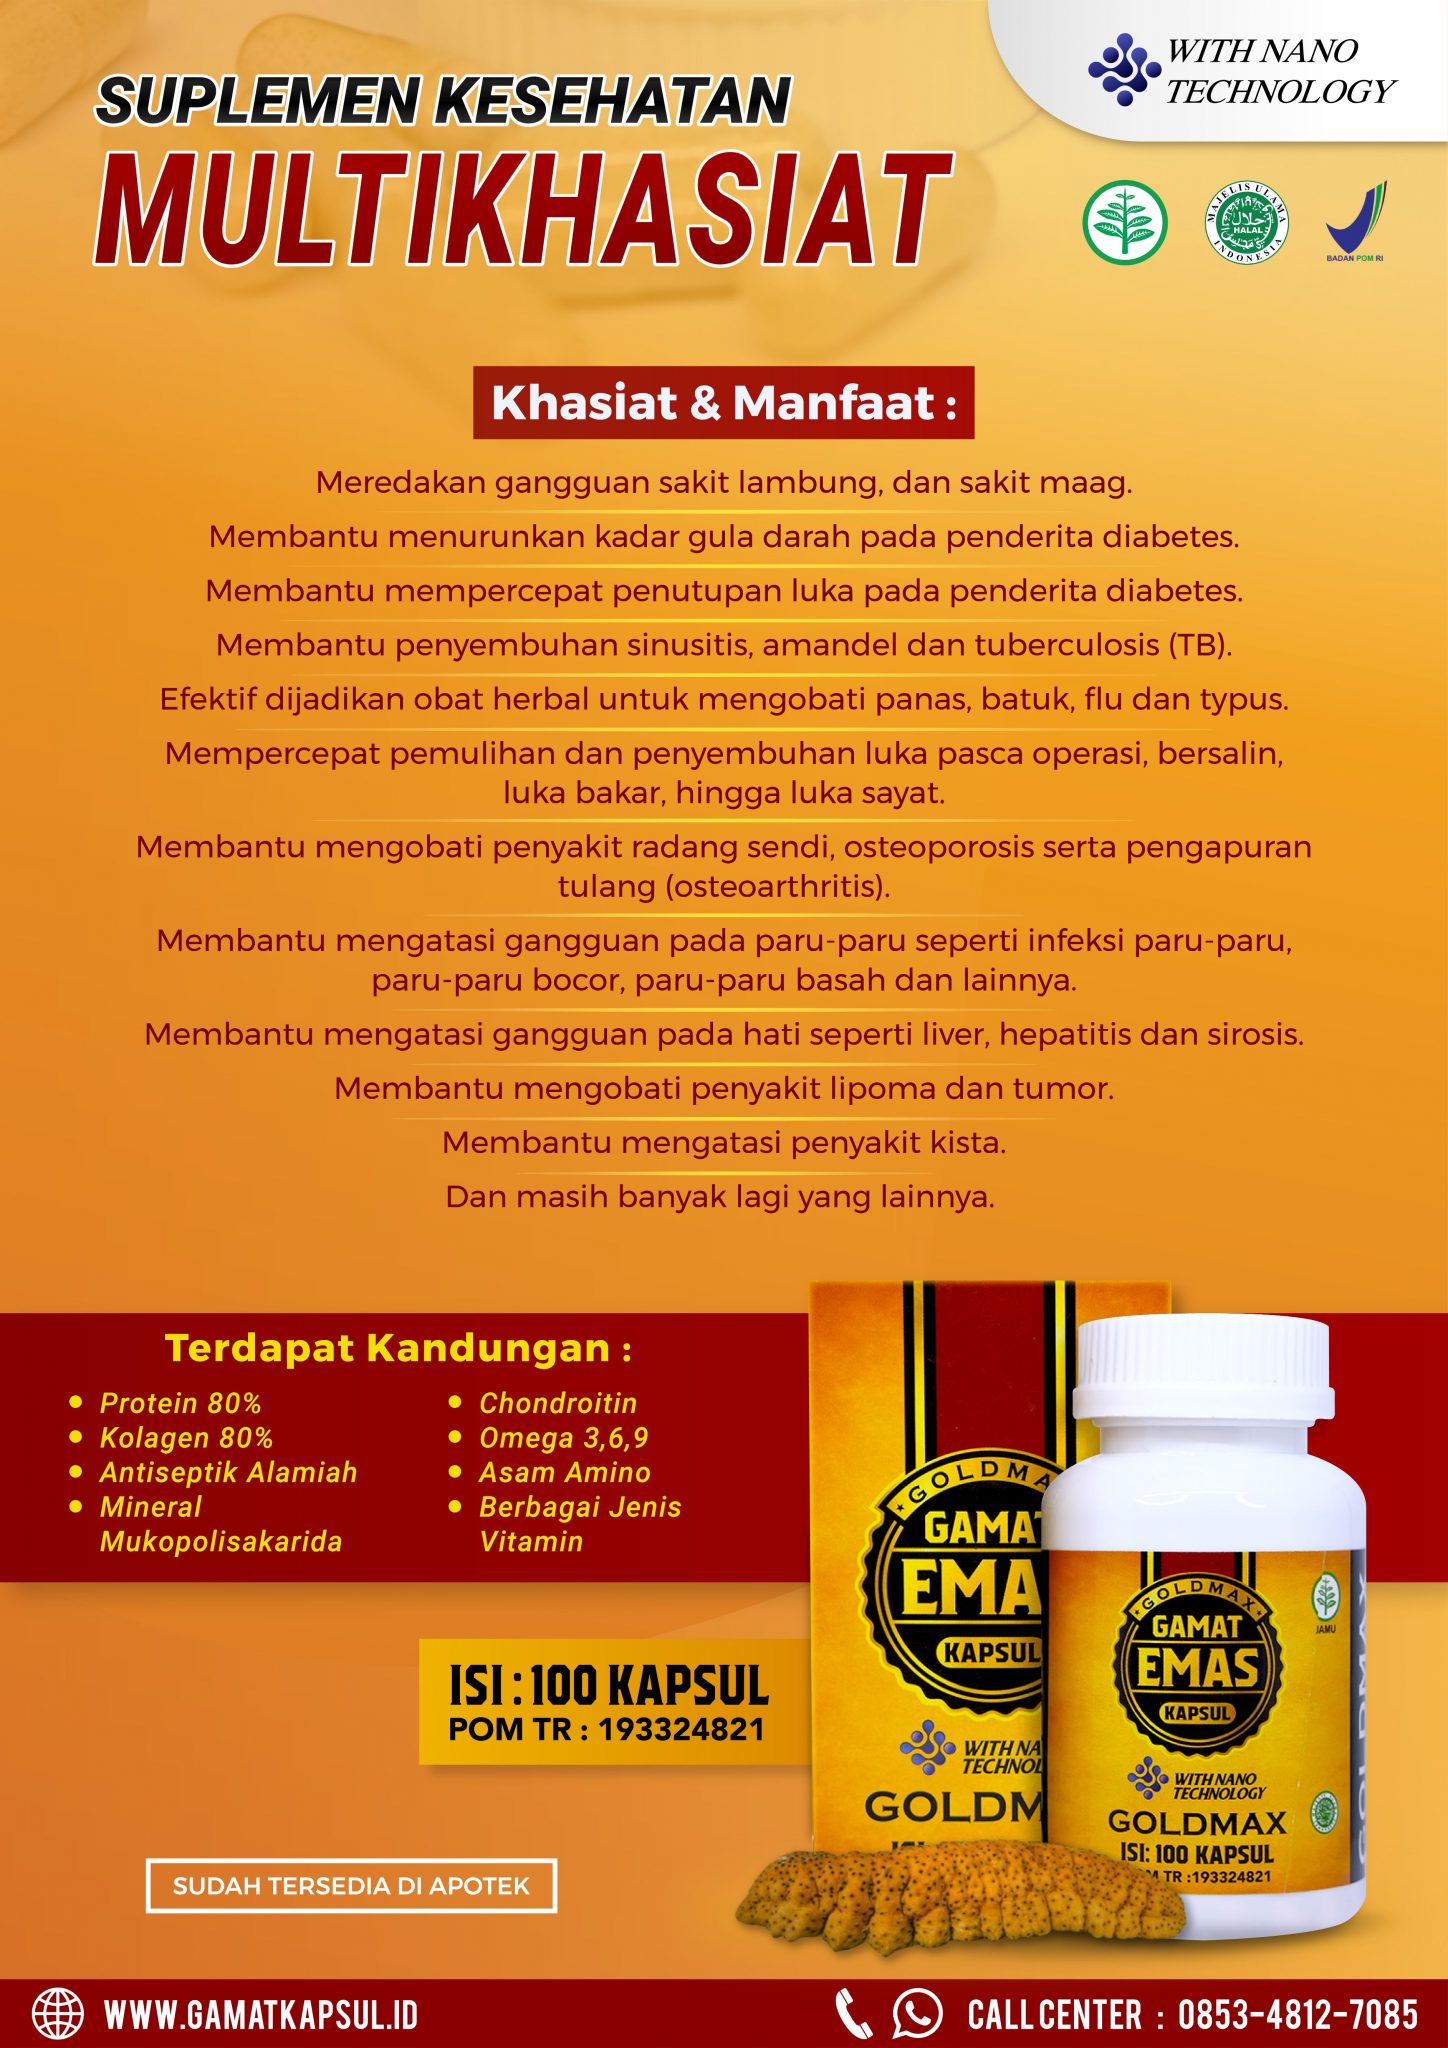 Goldmax Gamat Emas Kapsul – Toko Acep Herbal Official